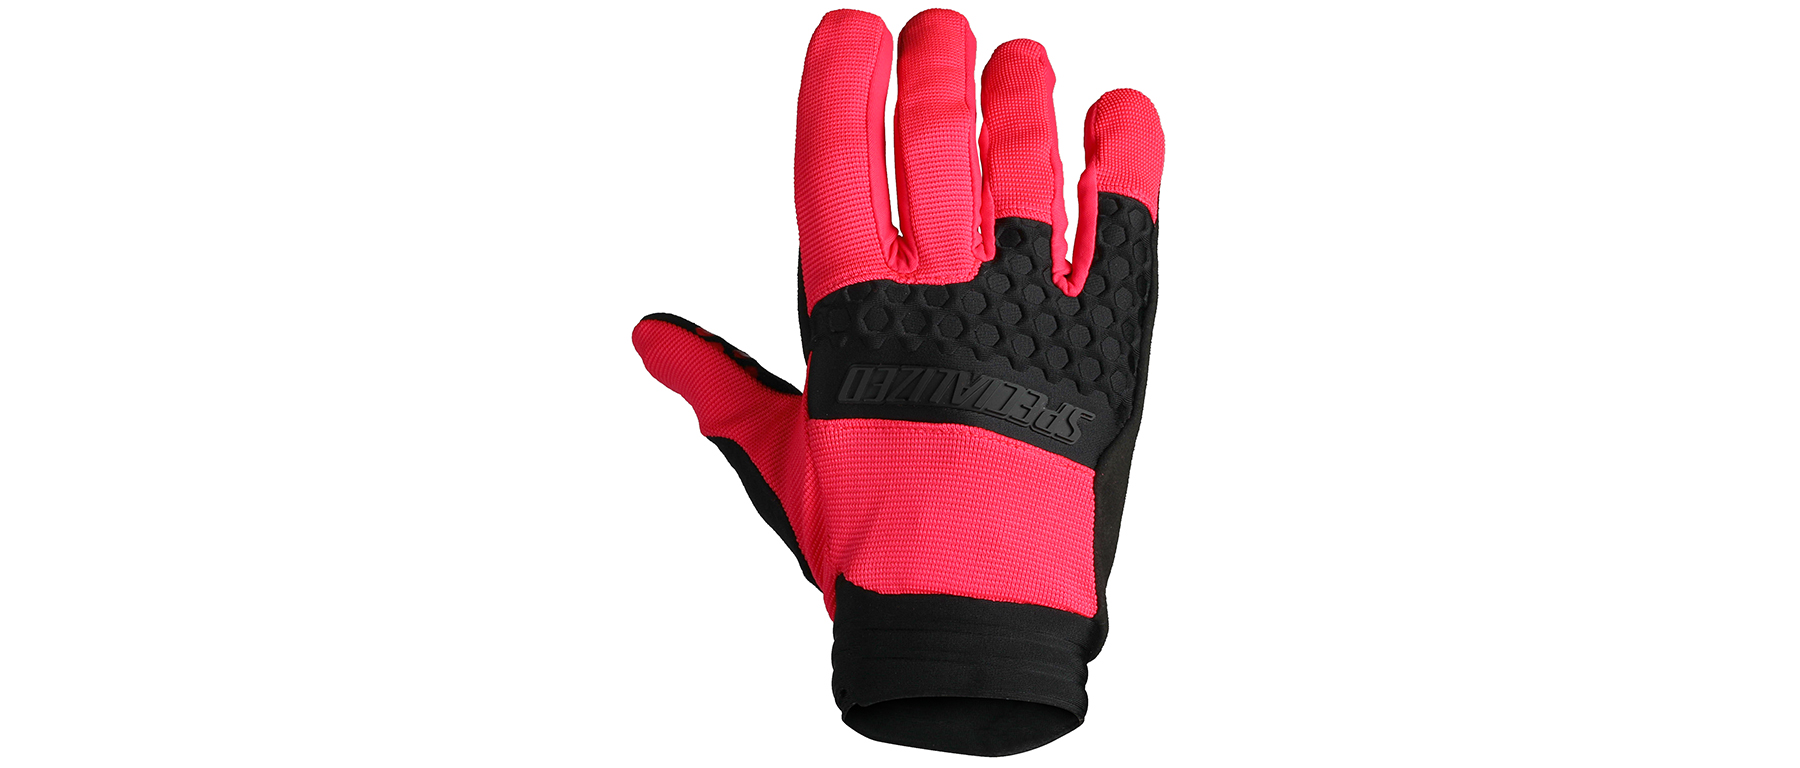 Specialized Trail Shield Glove